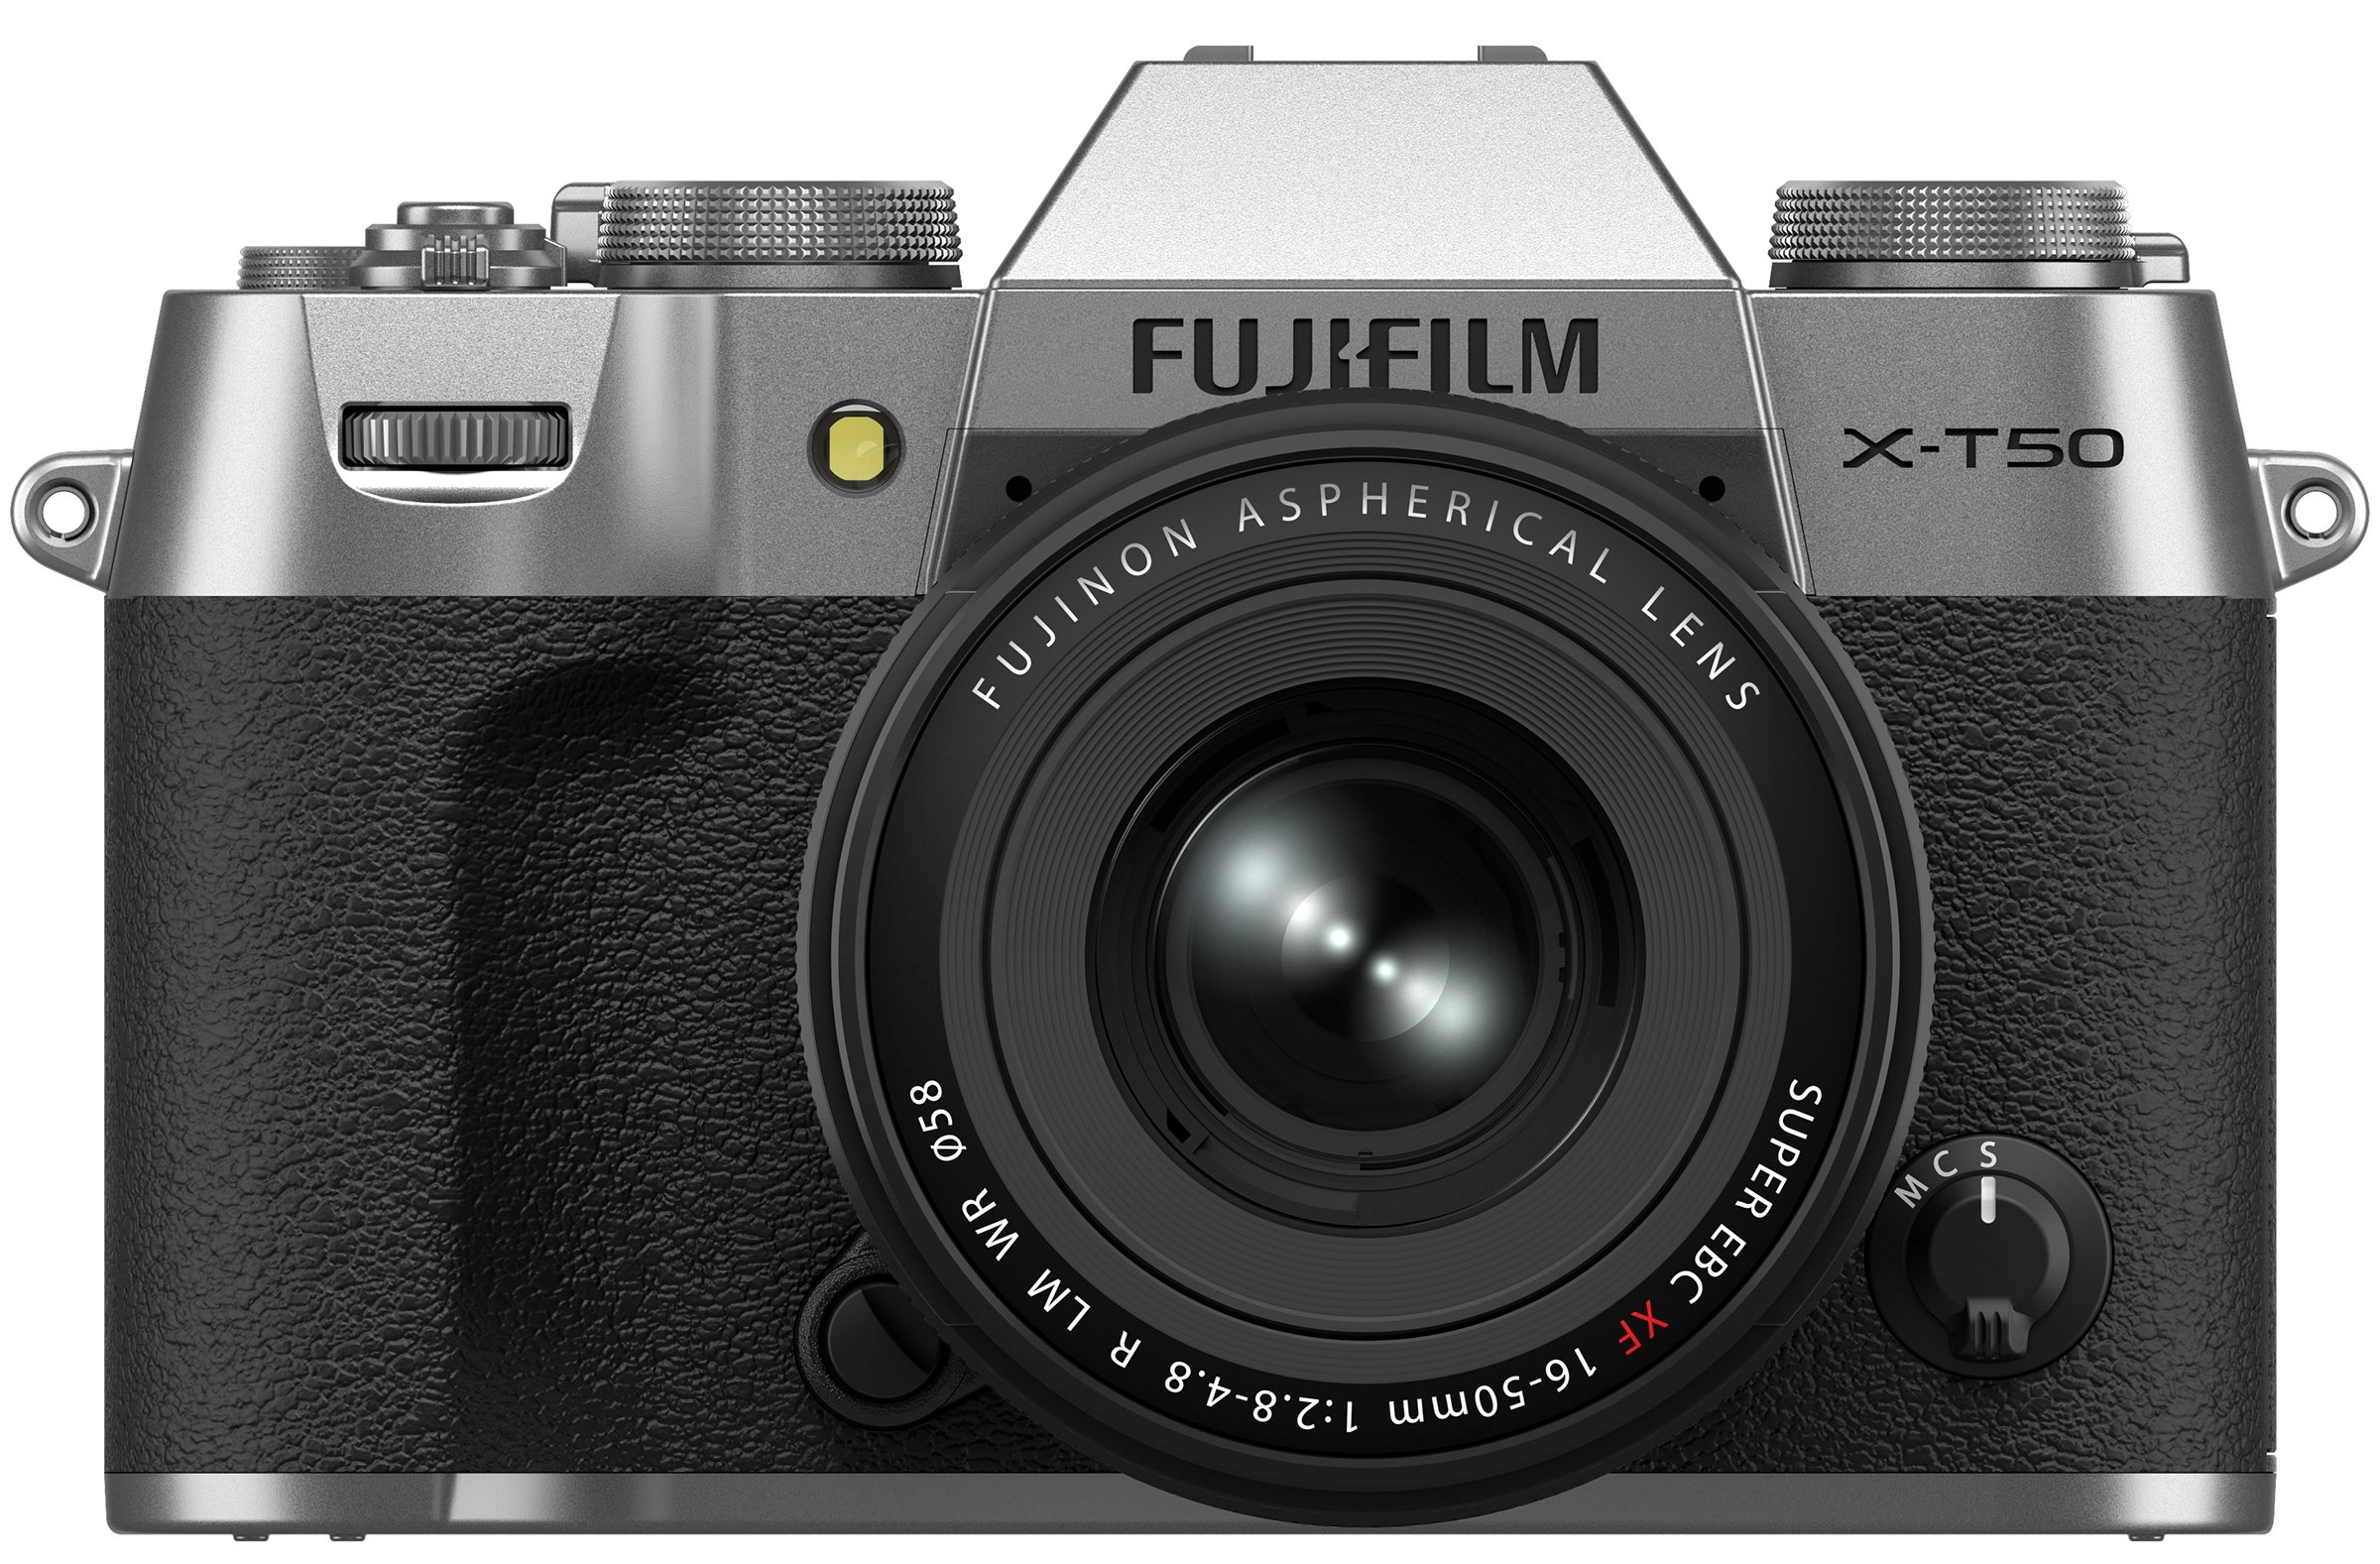 Fujifilm X-T50 cùng kit XF 16-50mm ra mắt, trang bị cảm biến 40.2MP sắc nét và IBIS lên đến 7 stop